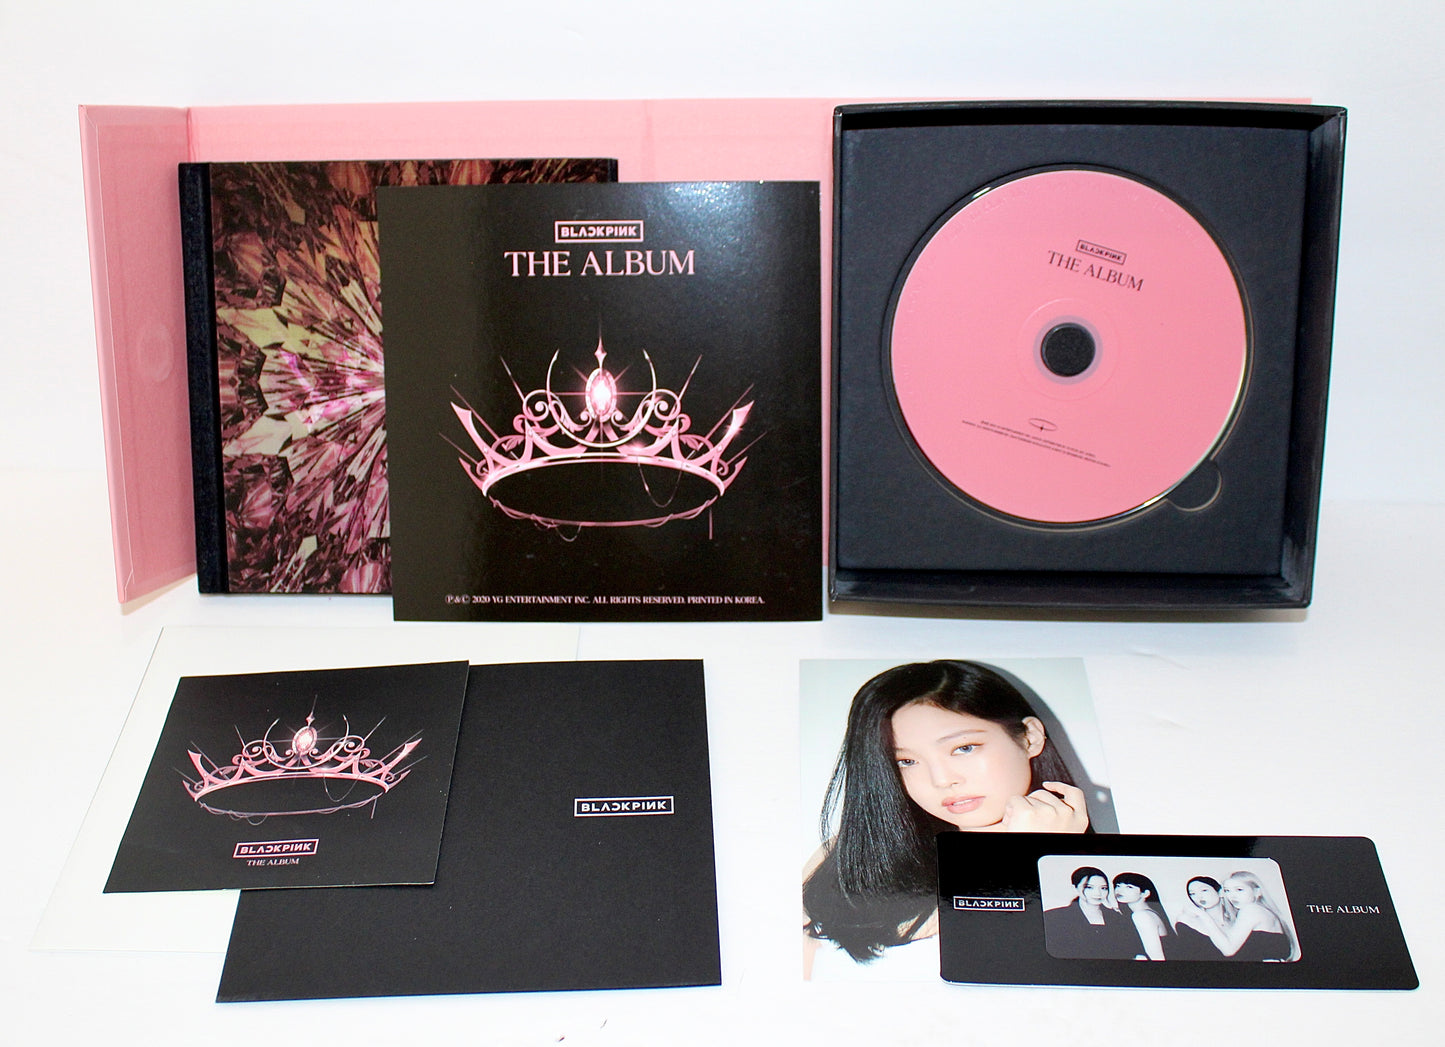 BLACKPINK 1st Album: The Album | Ver. 2